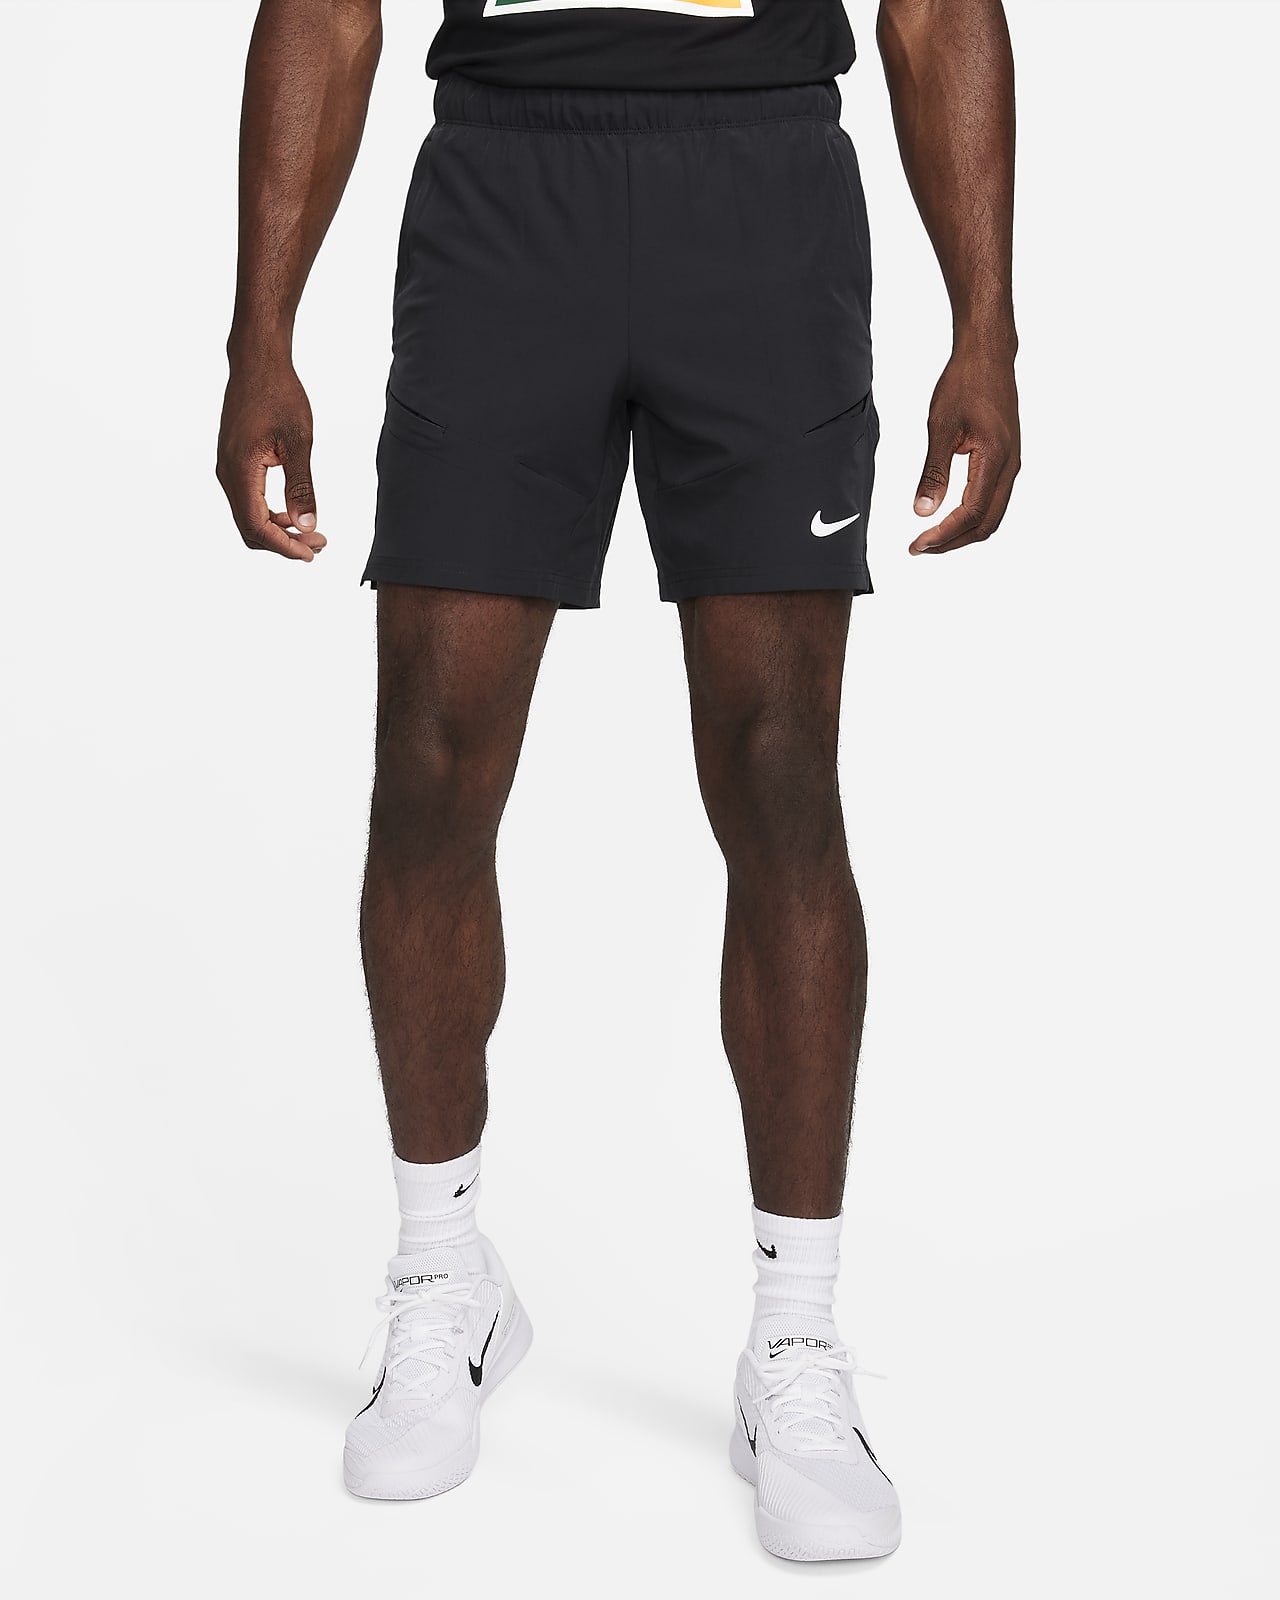 NikeCourt Advantage Dri-FIT-tennisshorts (18 cm) til mænd